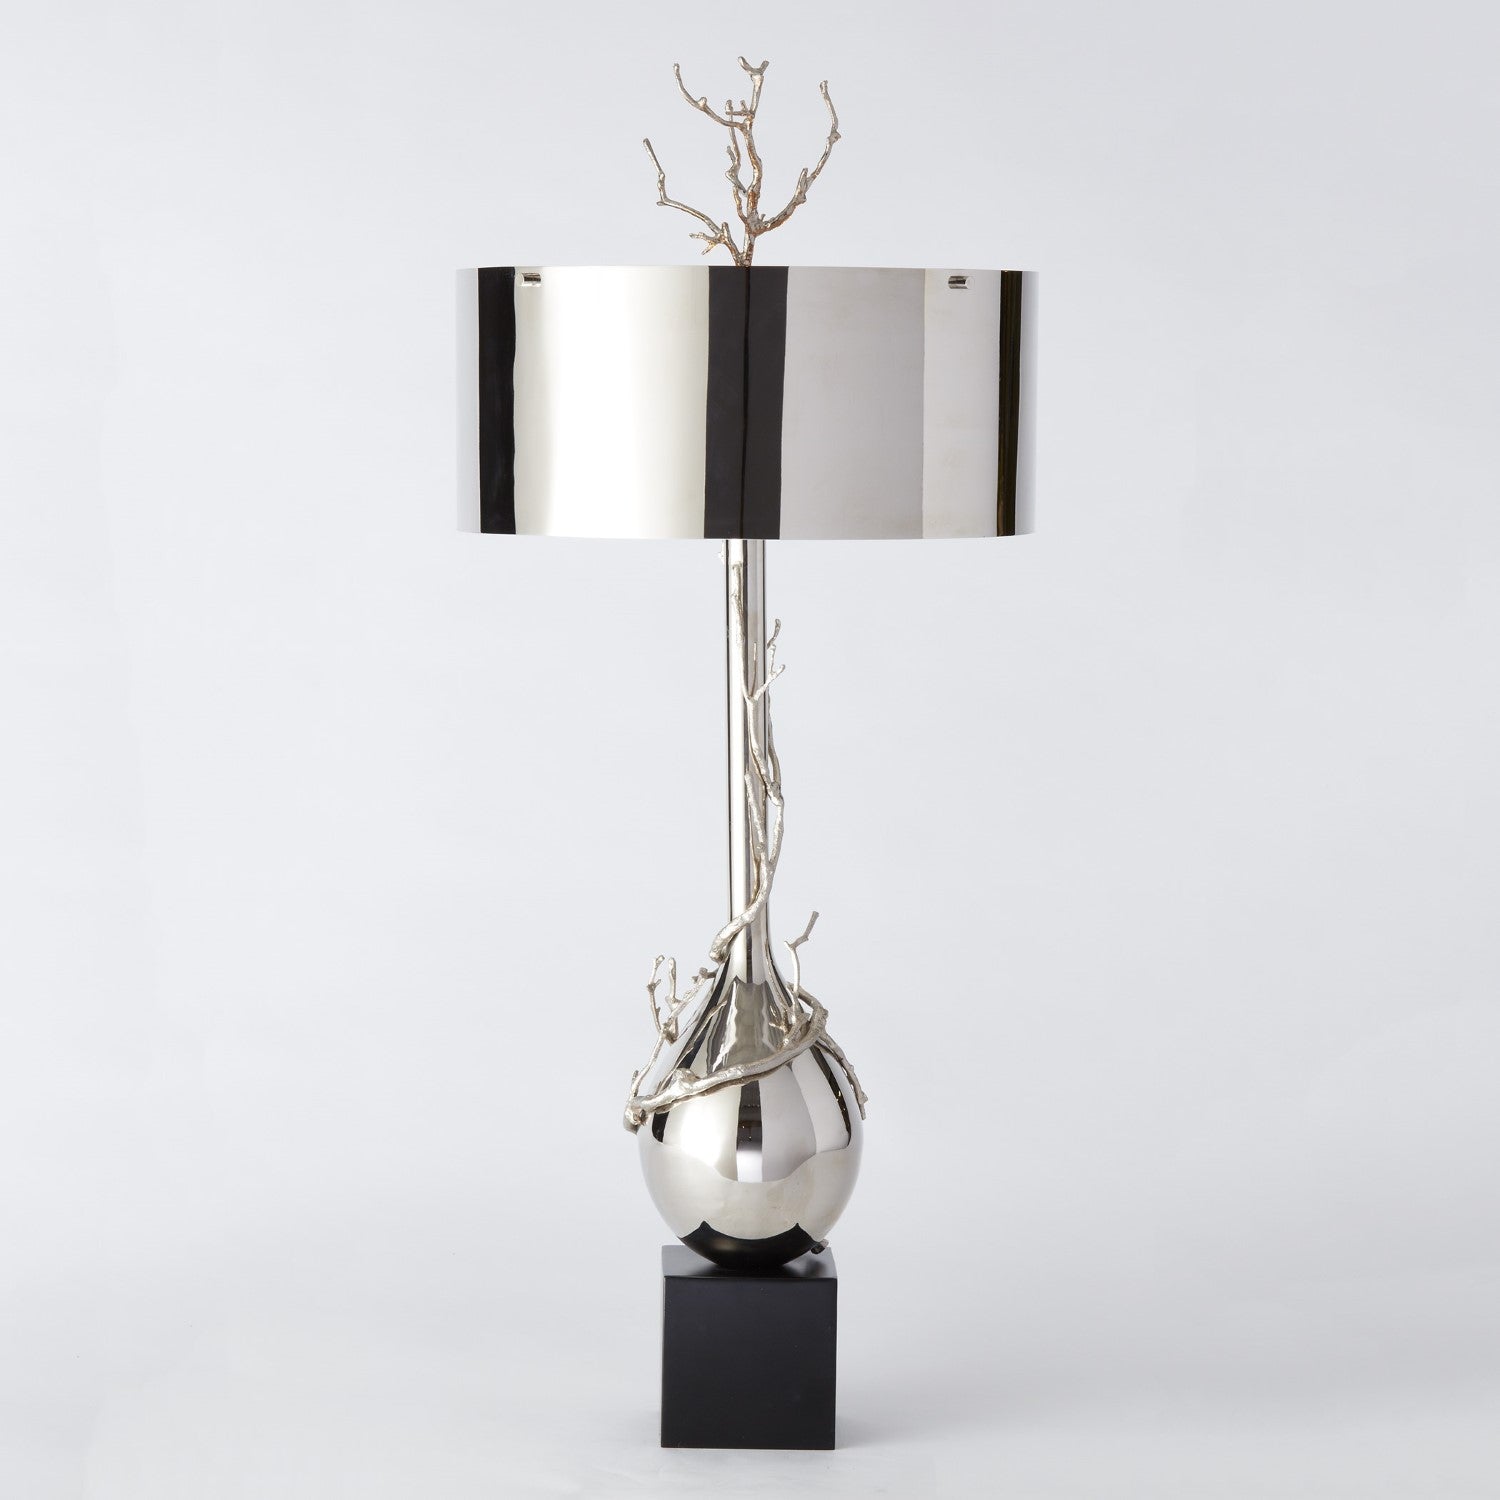 Twig Bulb Lamp - Nickel - Grats Decor Interior Design & Build Inc.